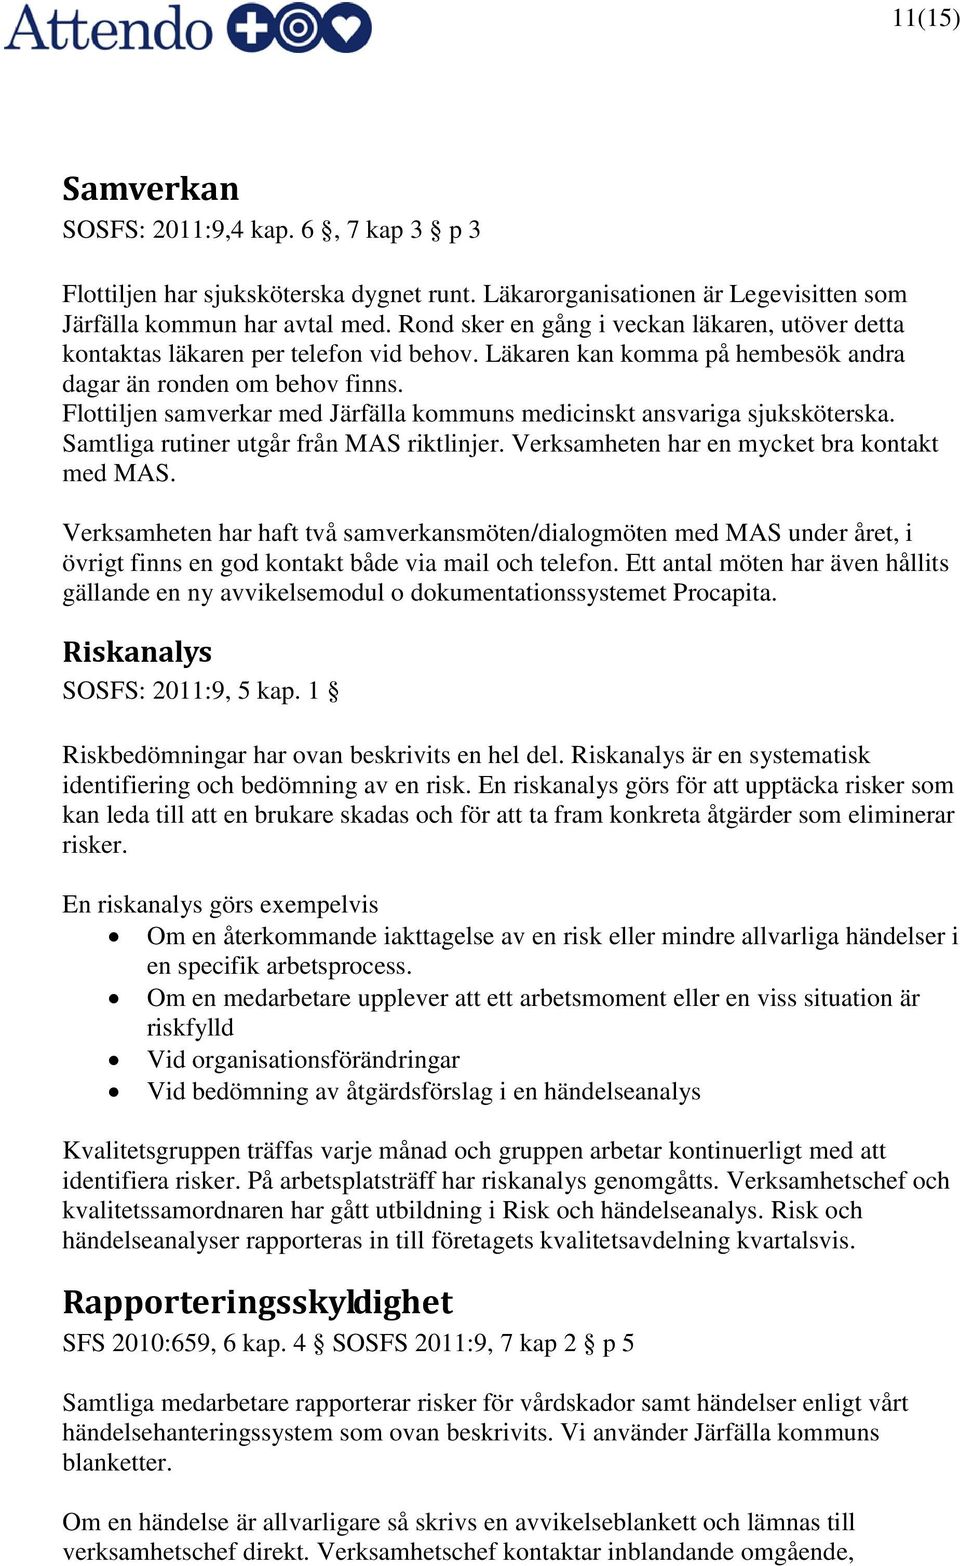 Flottiljen samverkar med Järfälla kommuns medicinskt ansvariga sjuksköterska. Samtliga rutiner utgår från MAS riktlinjer. Verksamheten har en mycket bra kontakt med MAS.